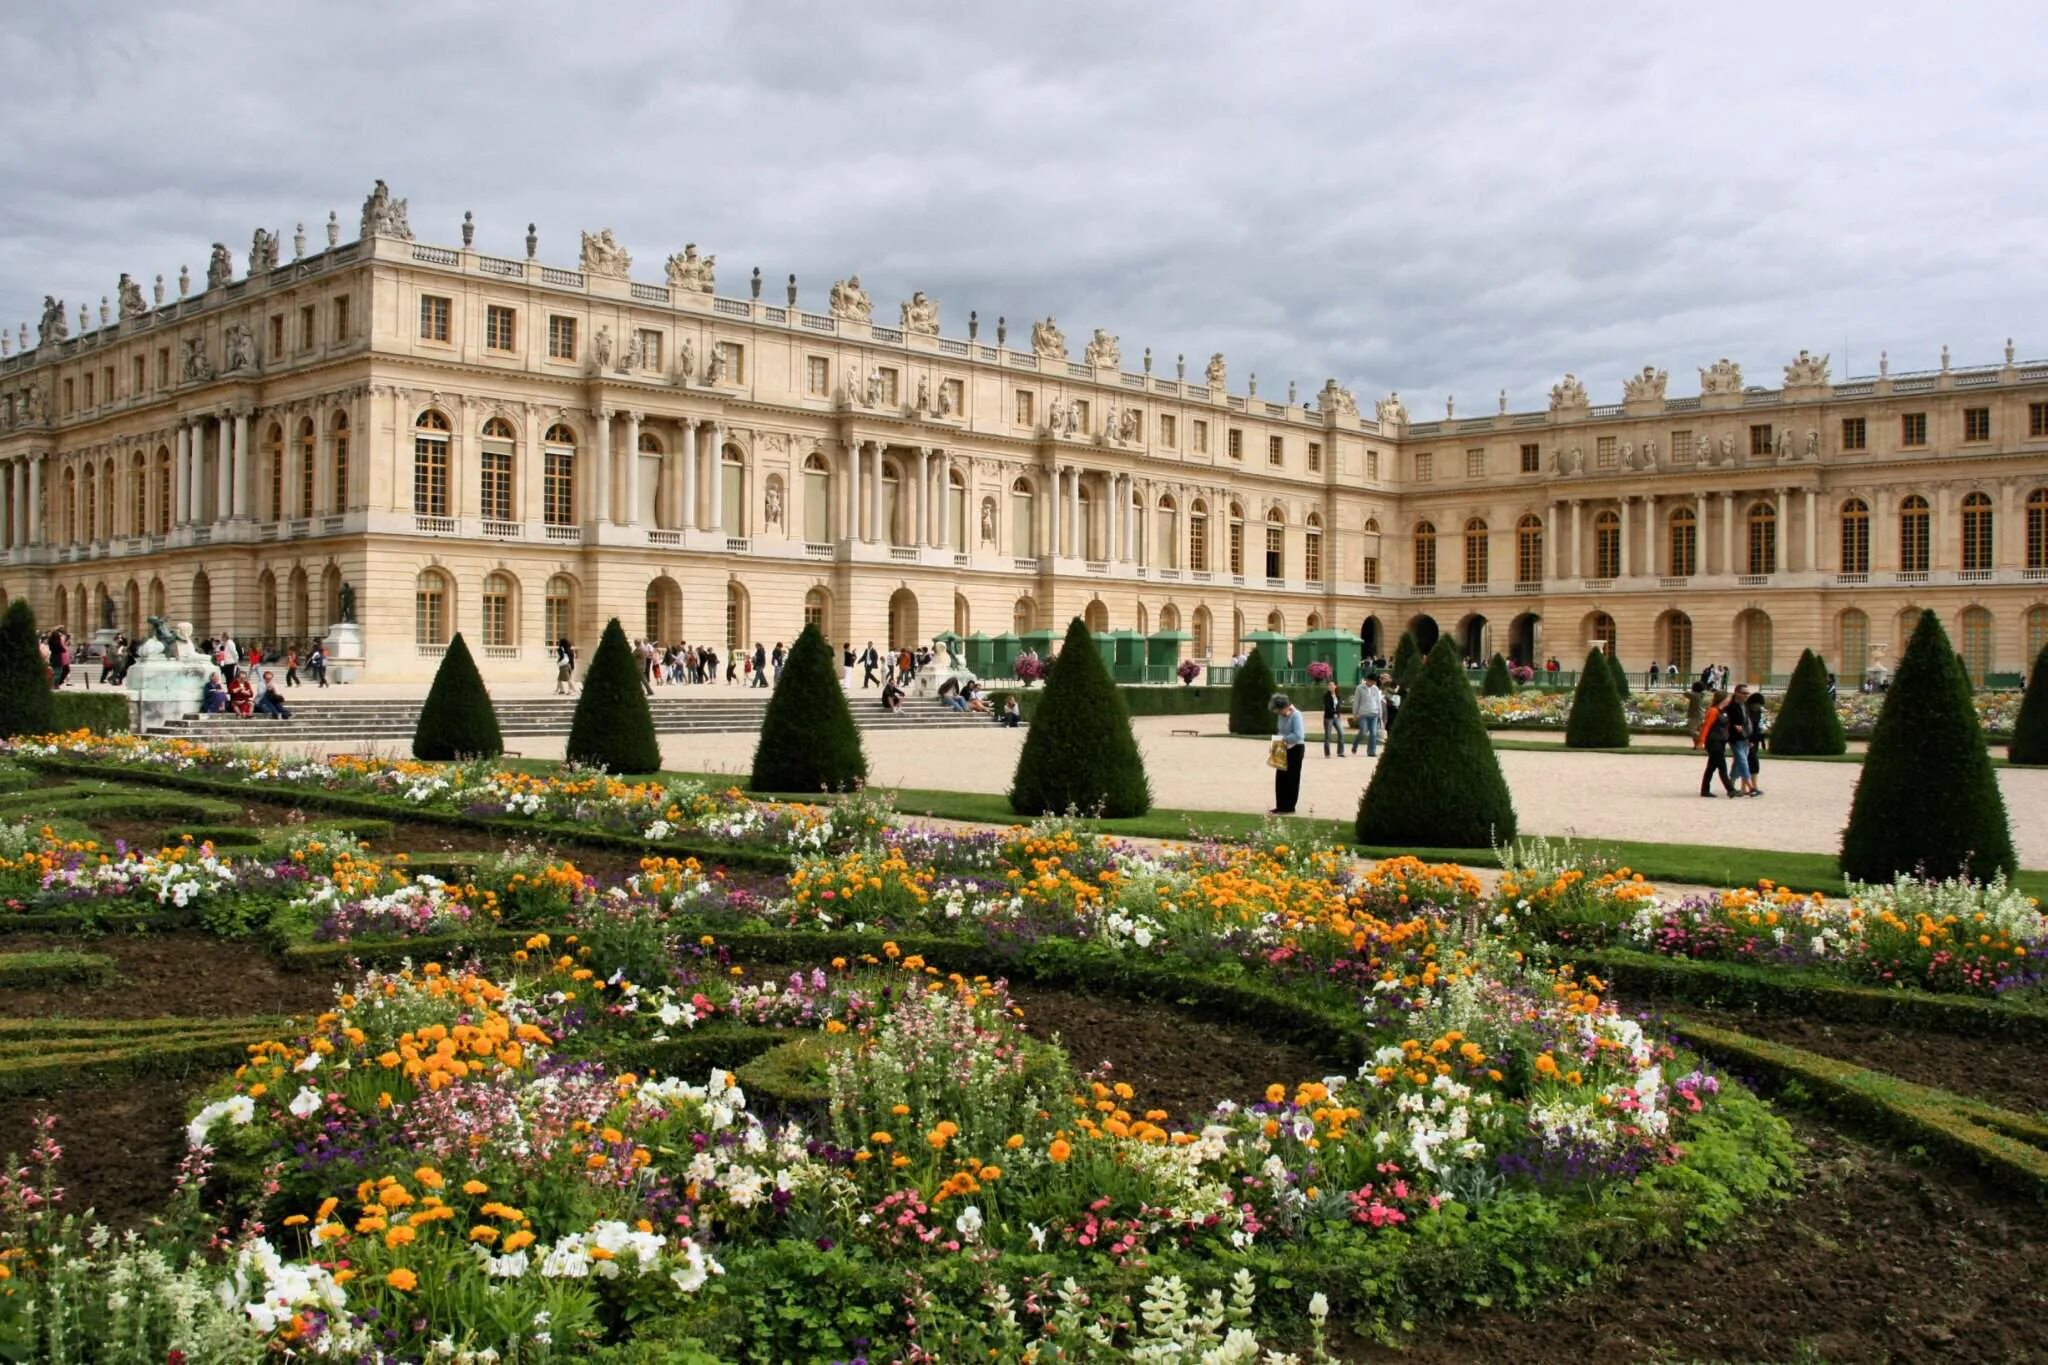 Про версаль. Версальский дворец Версаль Франция. Версаль дворцово-парковый ансамбль во Франции. Королевский дворец в Версале. Королевская резиденция Версаль.